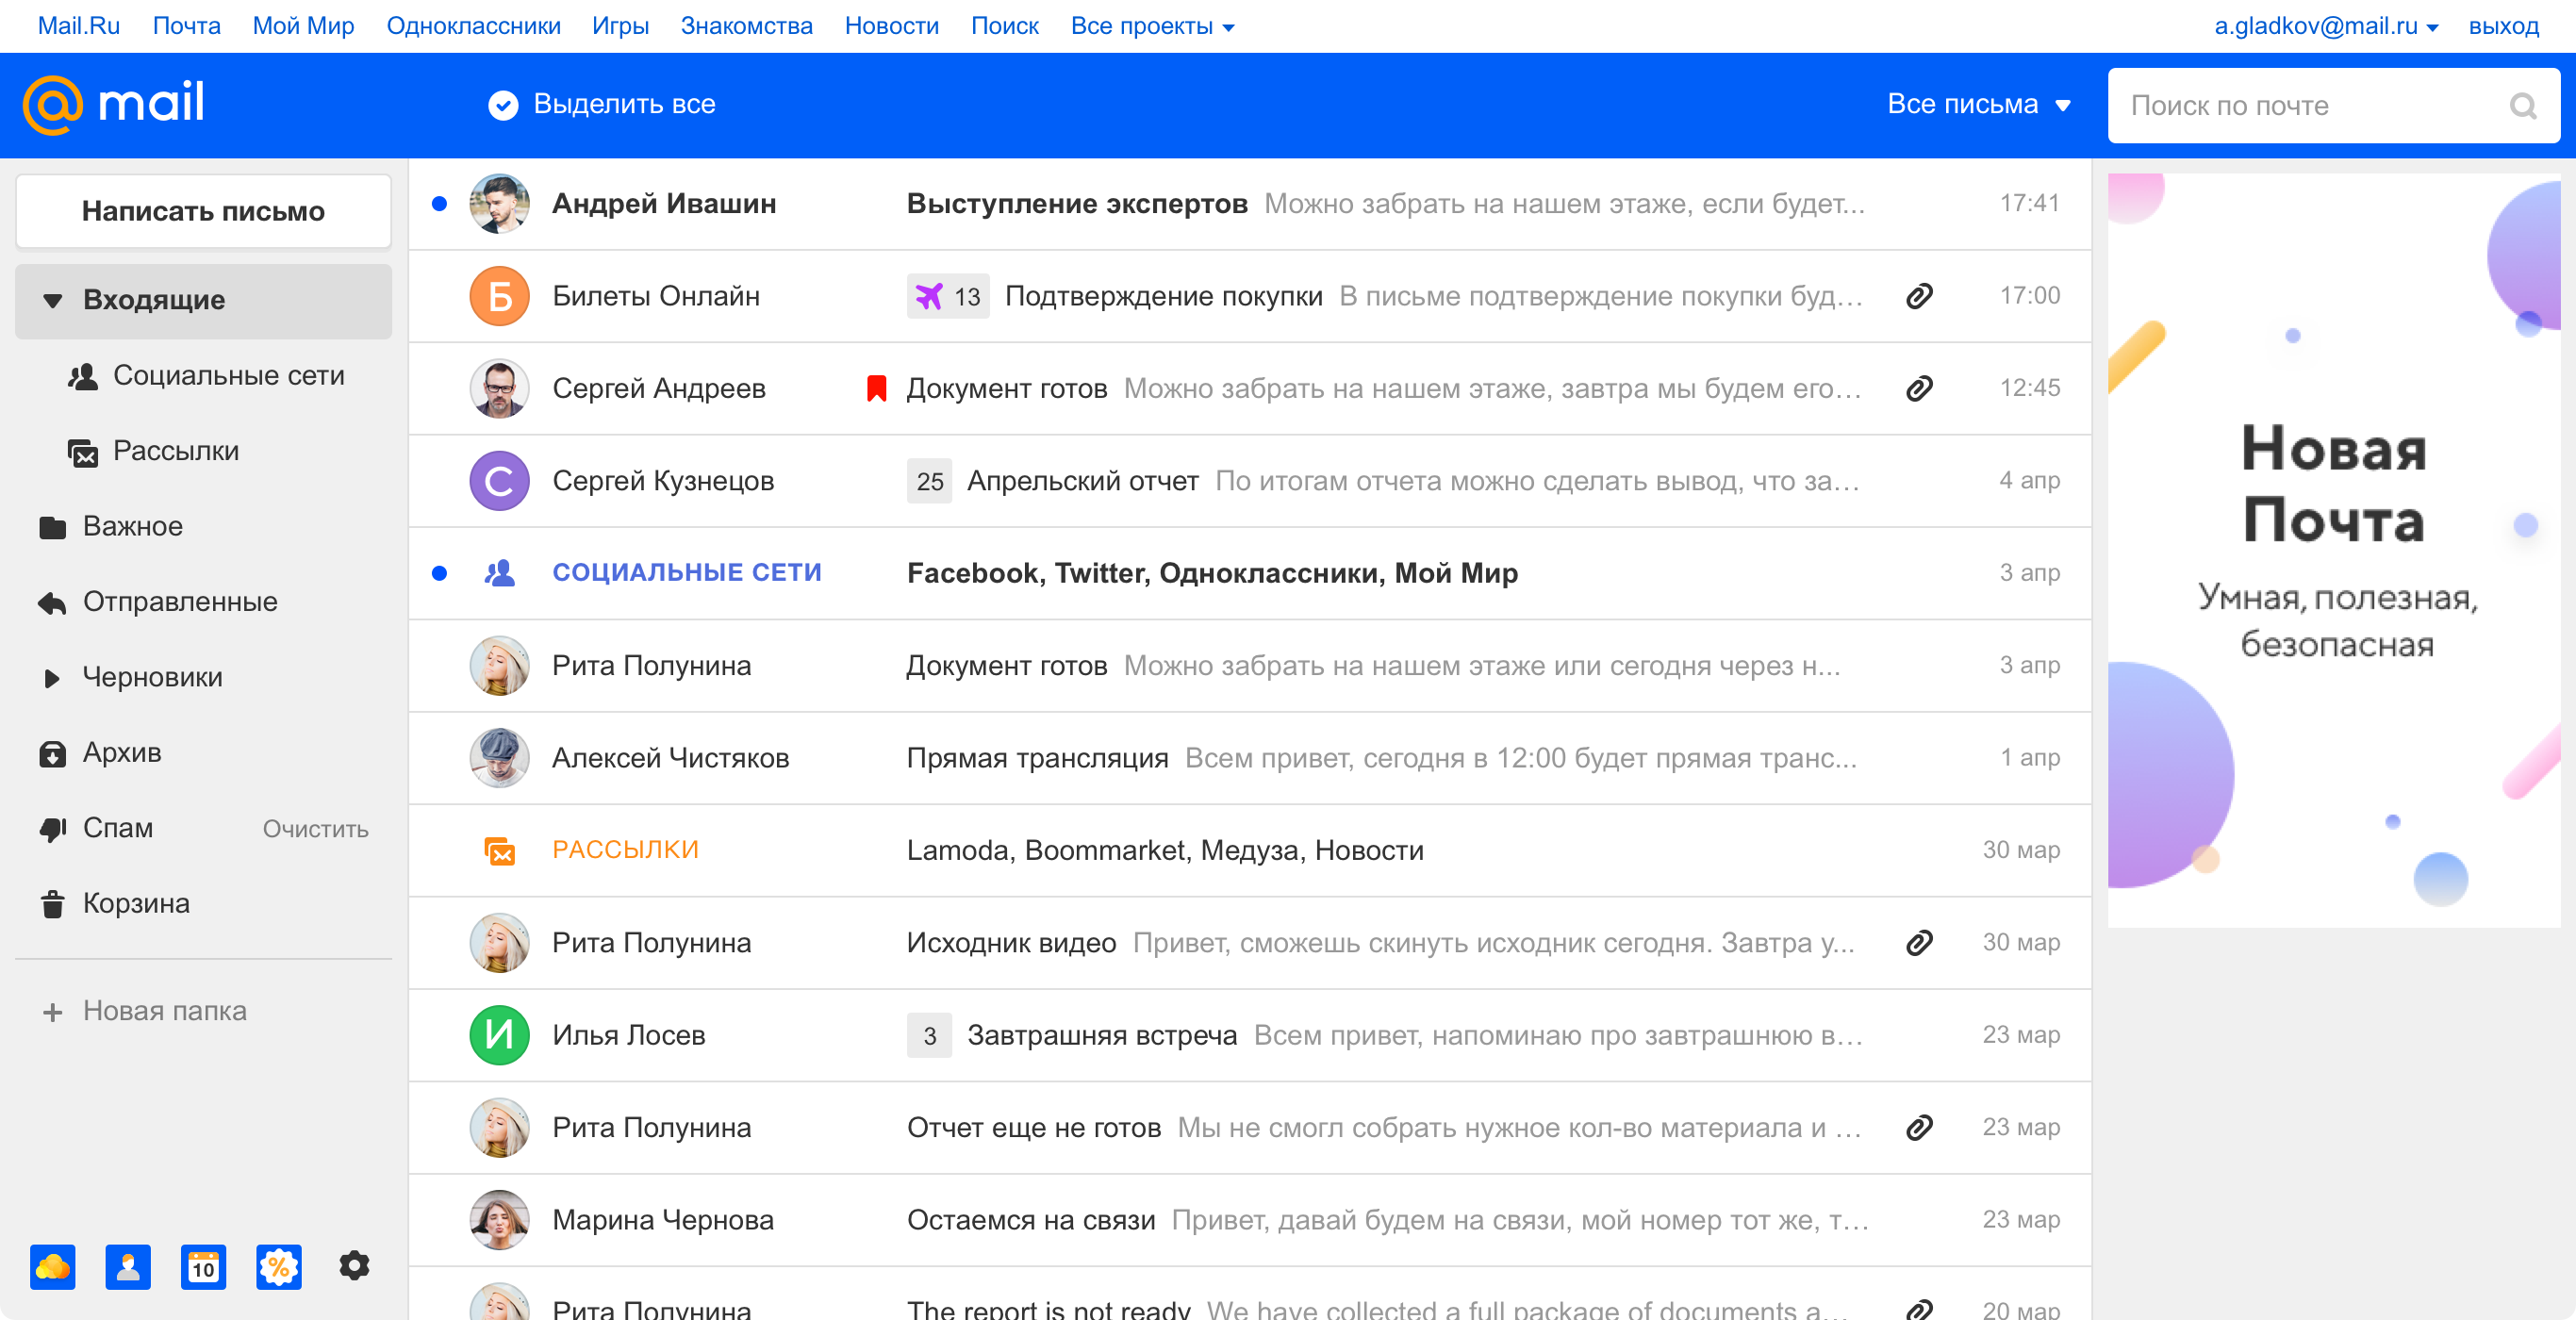 Новая Почта Mail.ru и при чем тут осьминог - 1